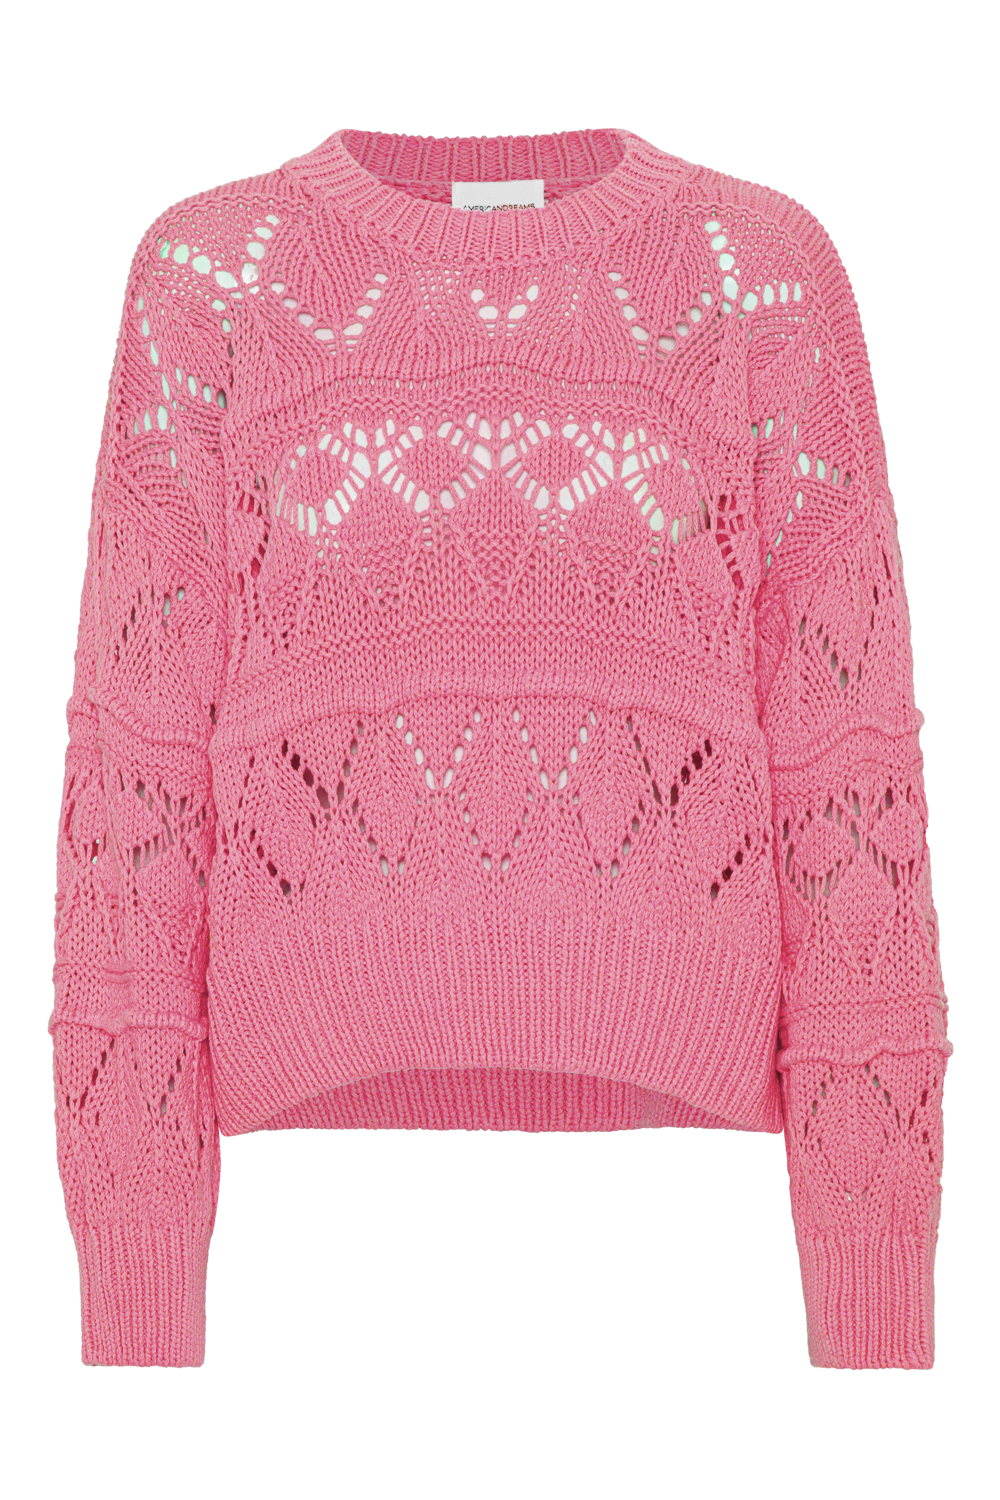 Cassie Cotton Pullover Pink